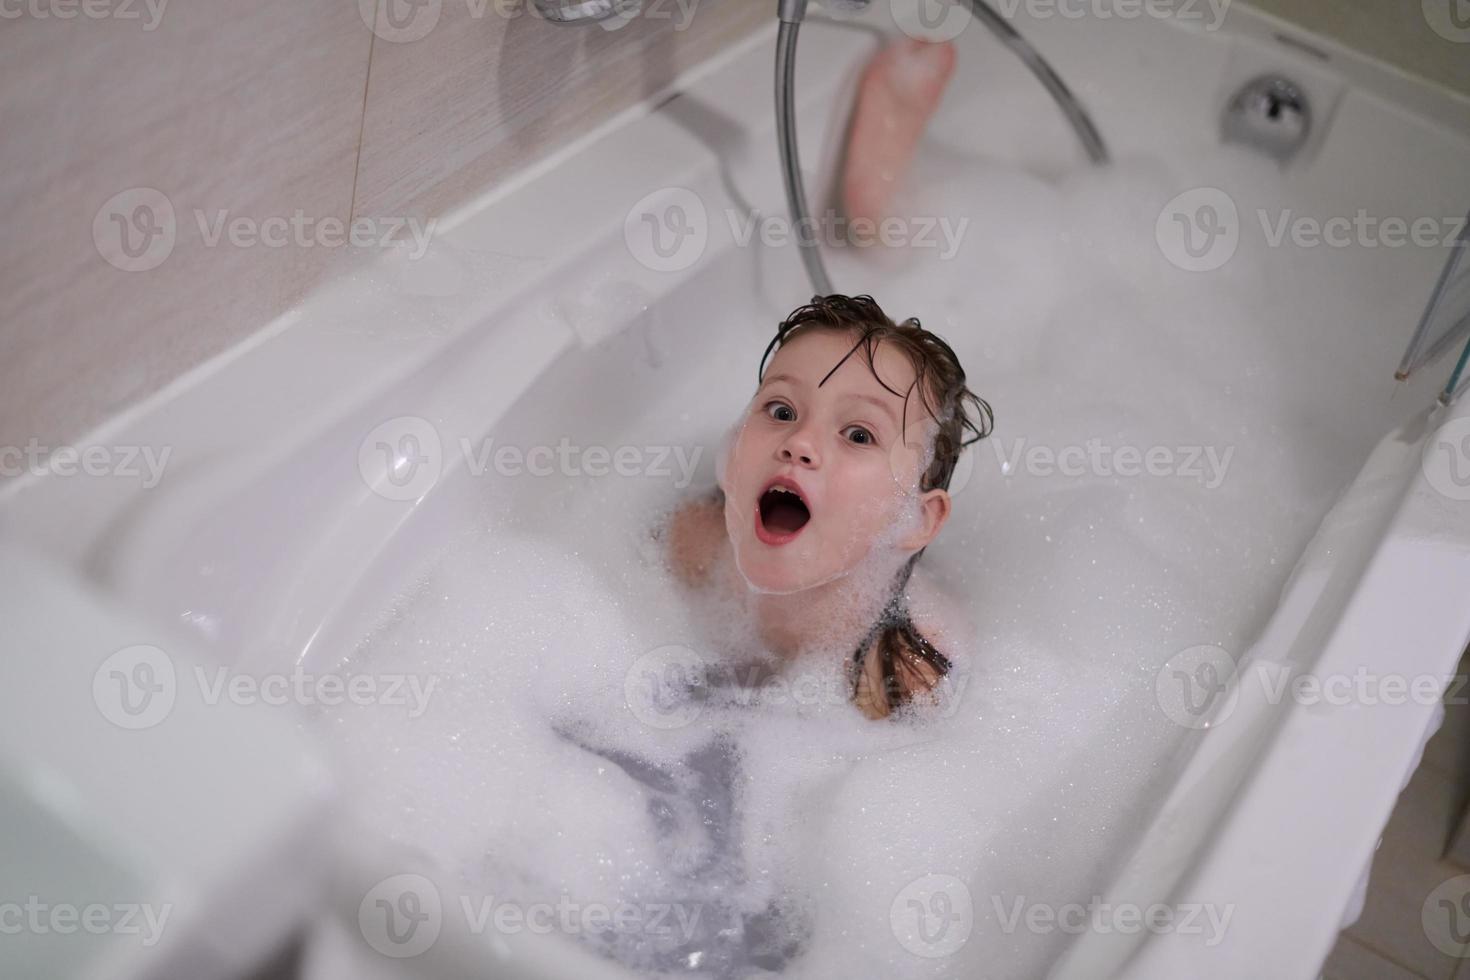 kleines Mädchen im Bad, das mit Seifenschaum spielt foto